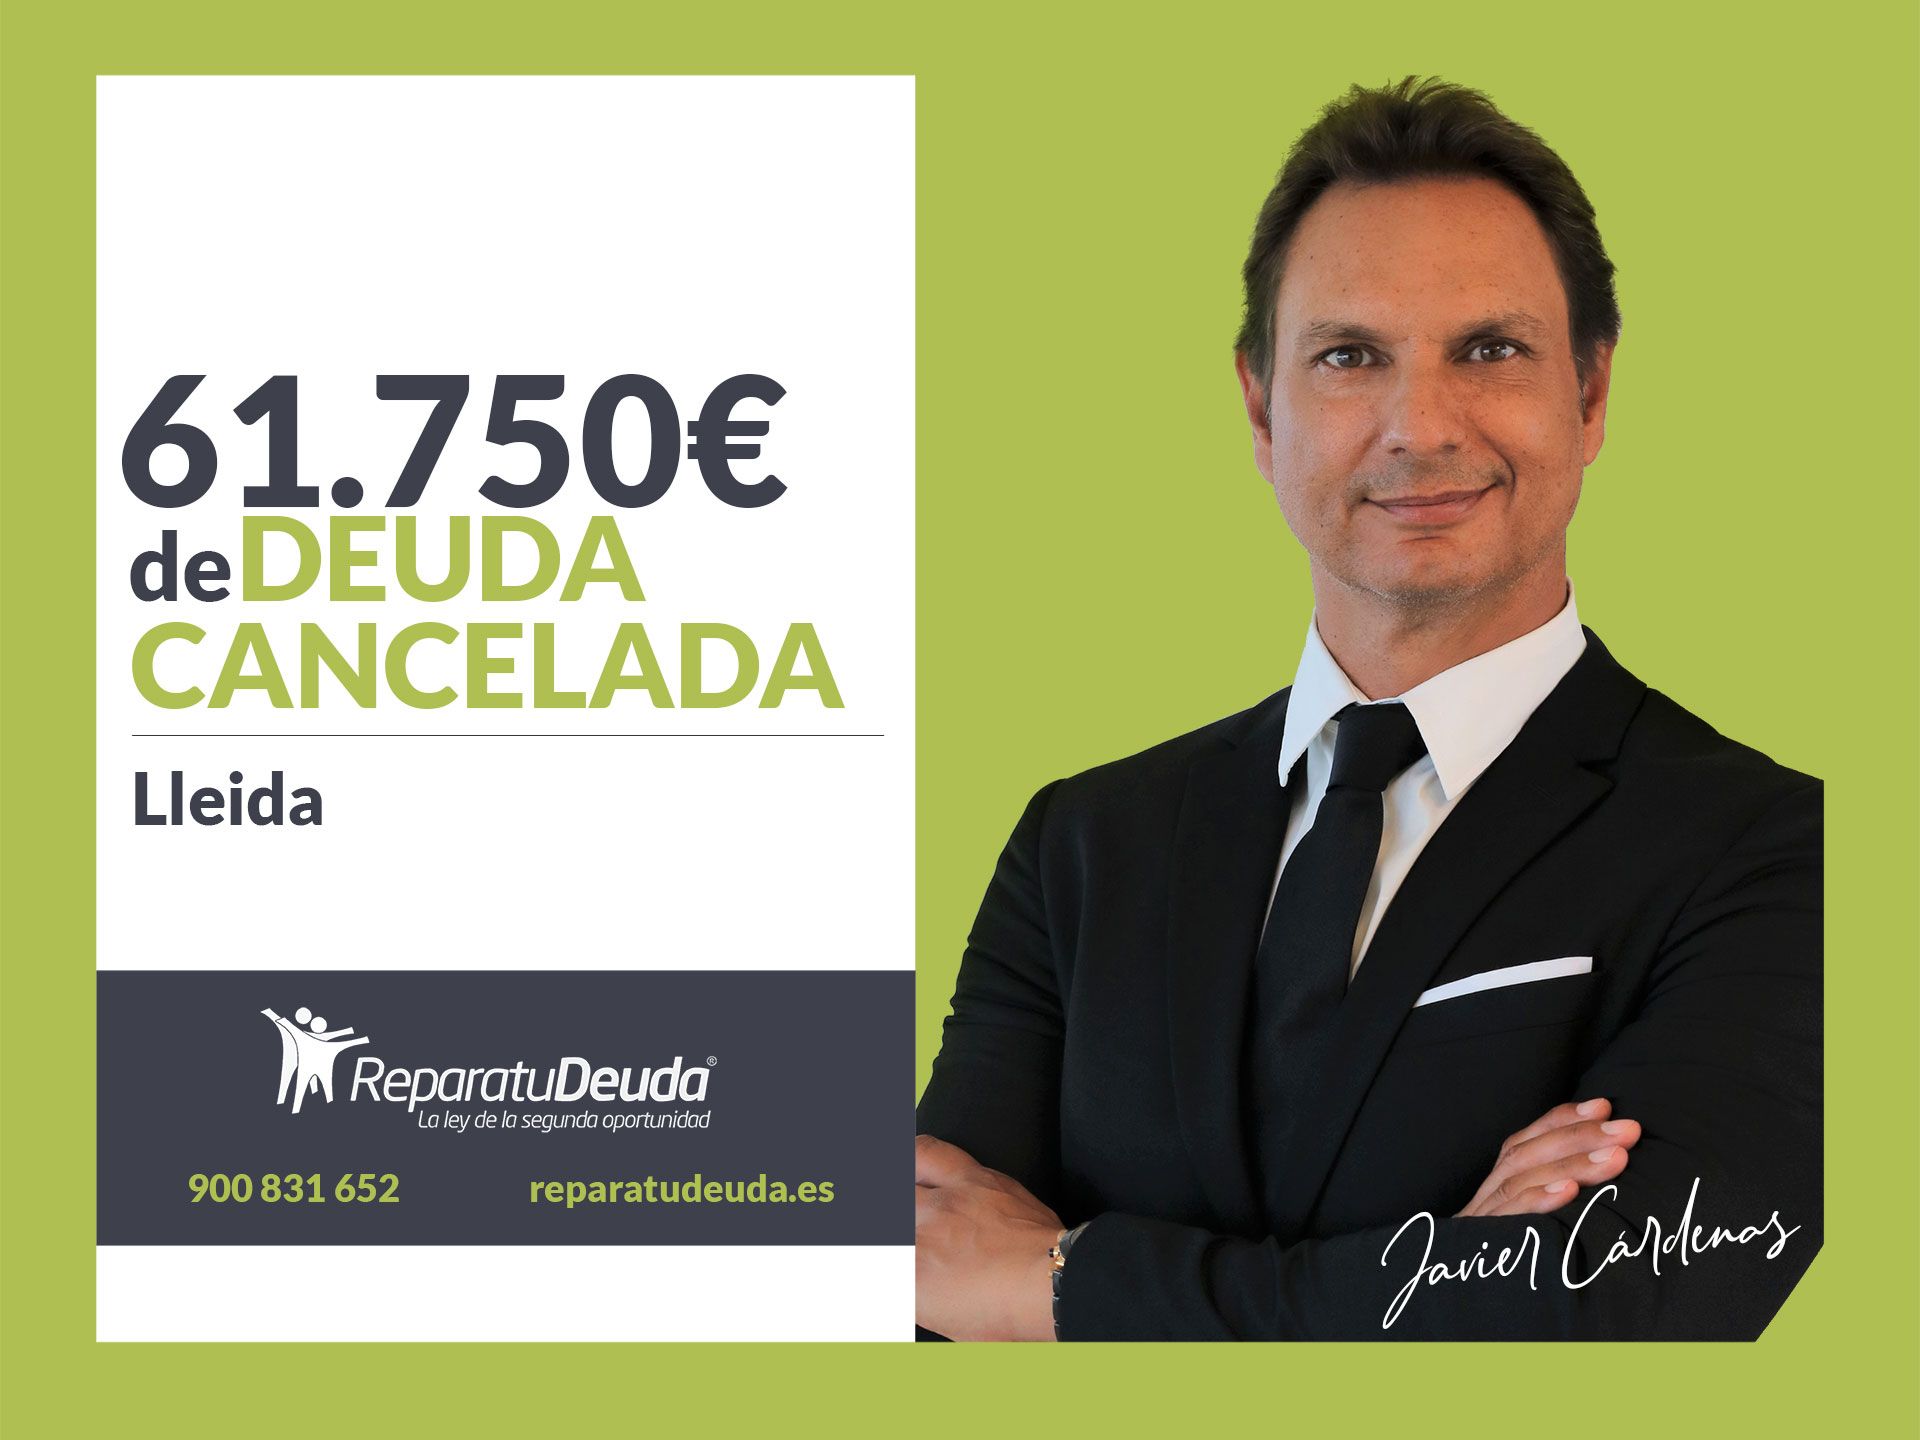 Repara tu Deuda Abogados cancela 61.750? en Lleida (Catalunya) con la Ley de Segunda Oportunidad